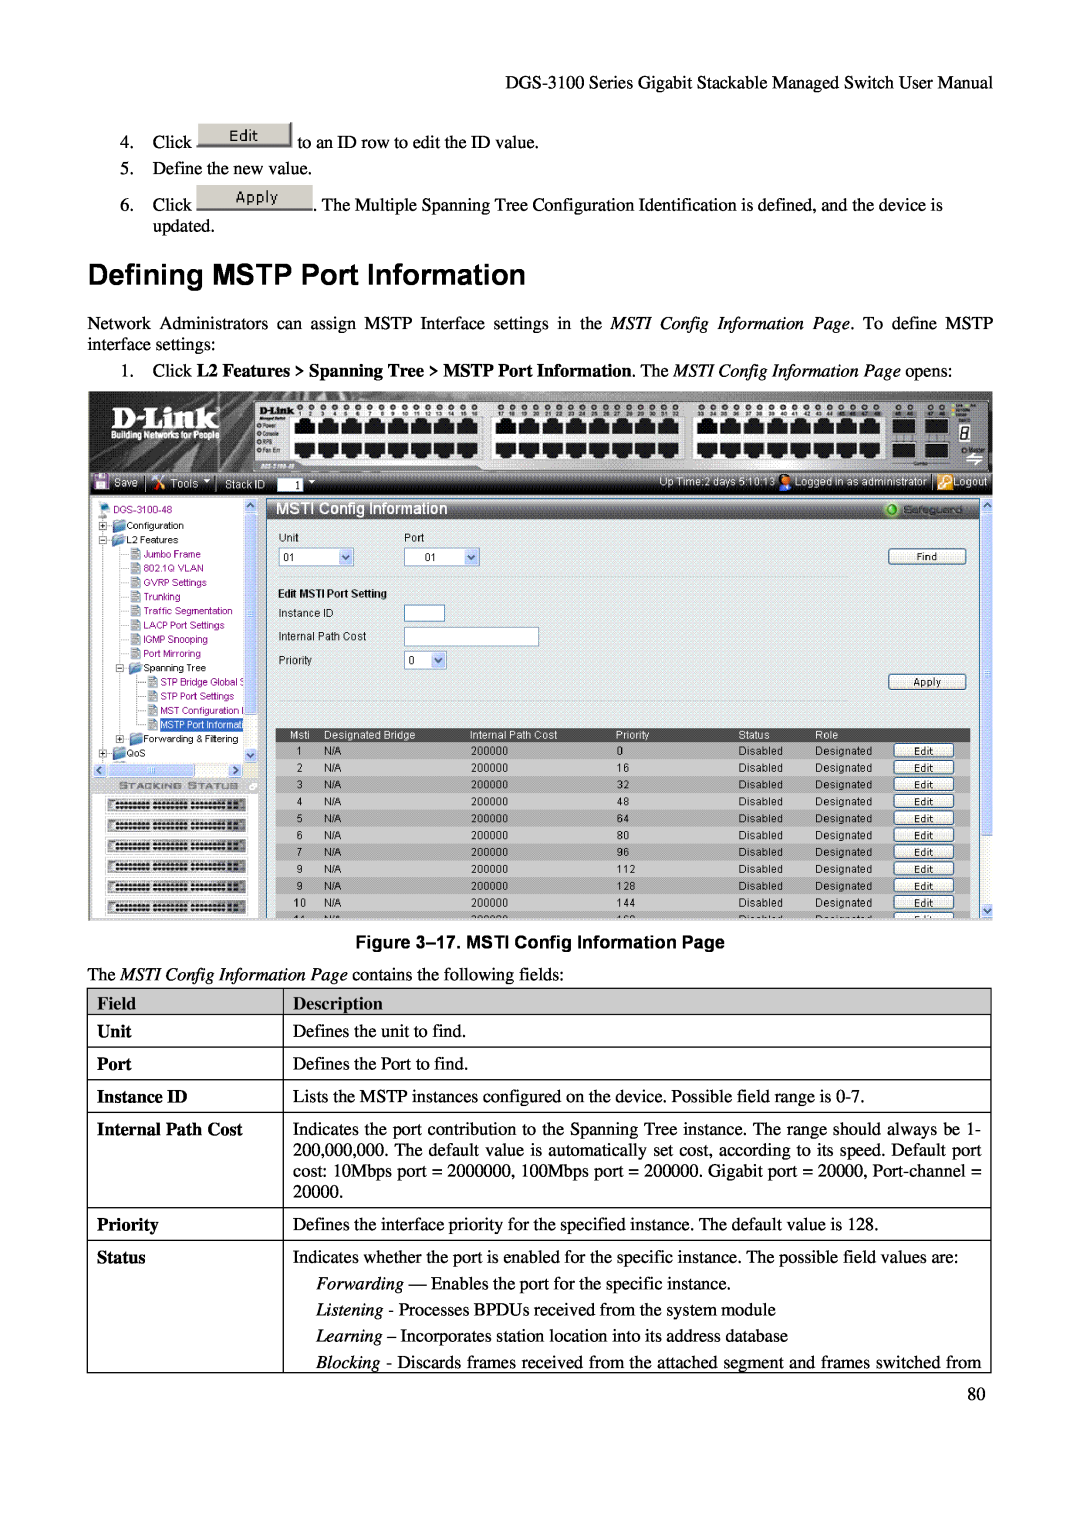 D-Link DGS-3100 user manual Defining MSTP Port Information, 17. MSTI Config Information Page, Description 